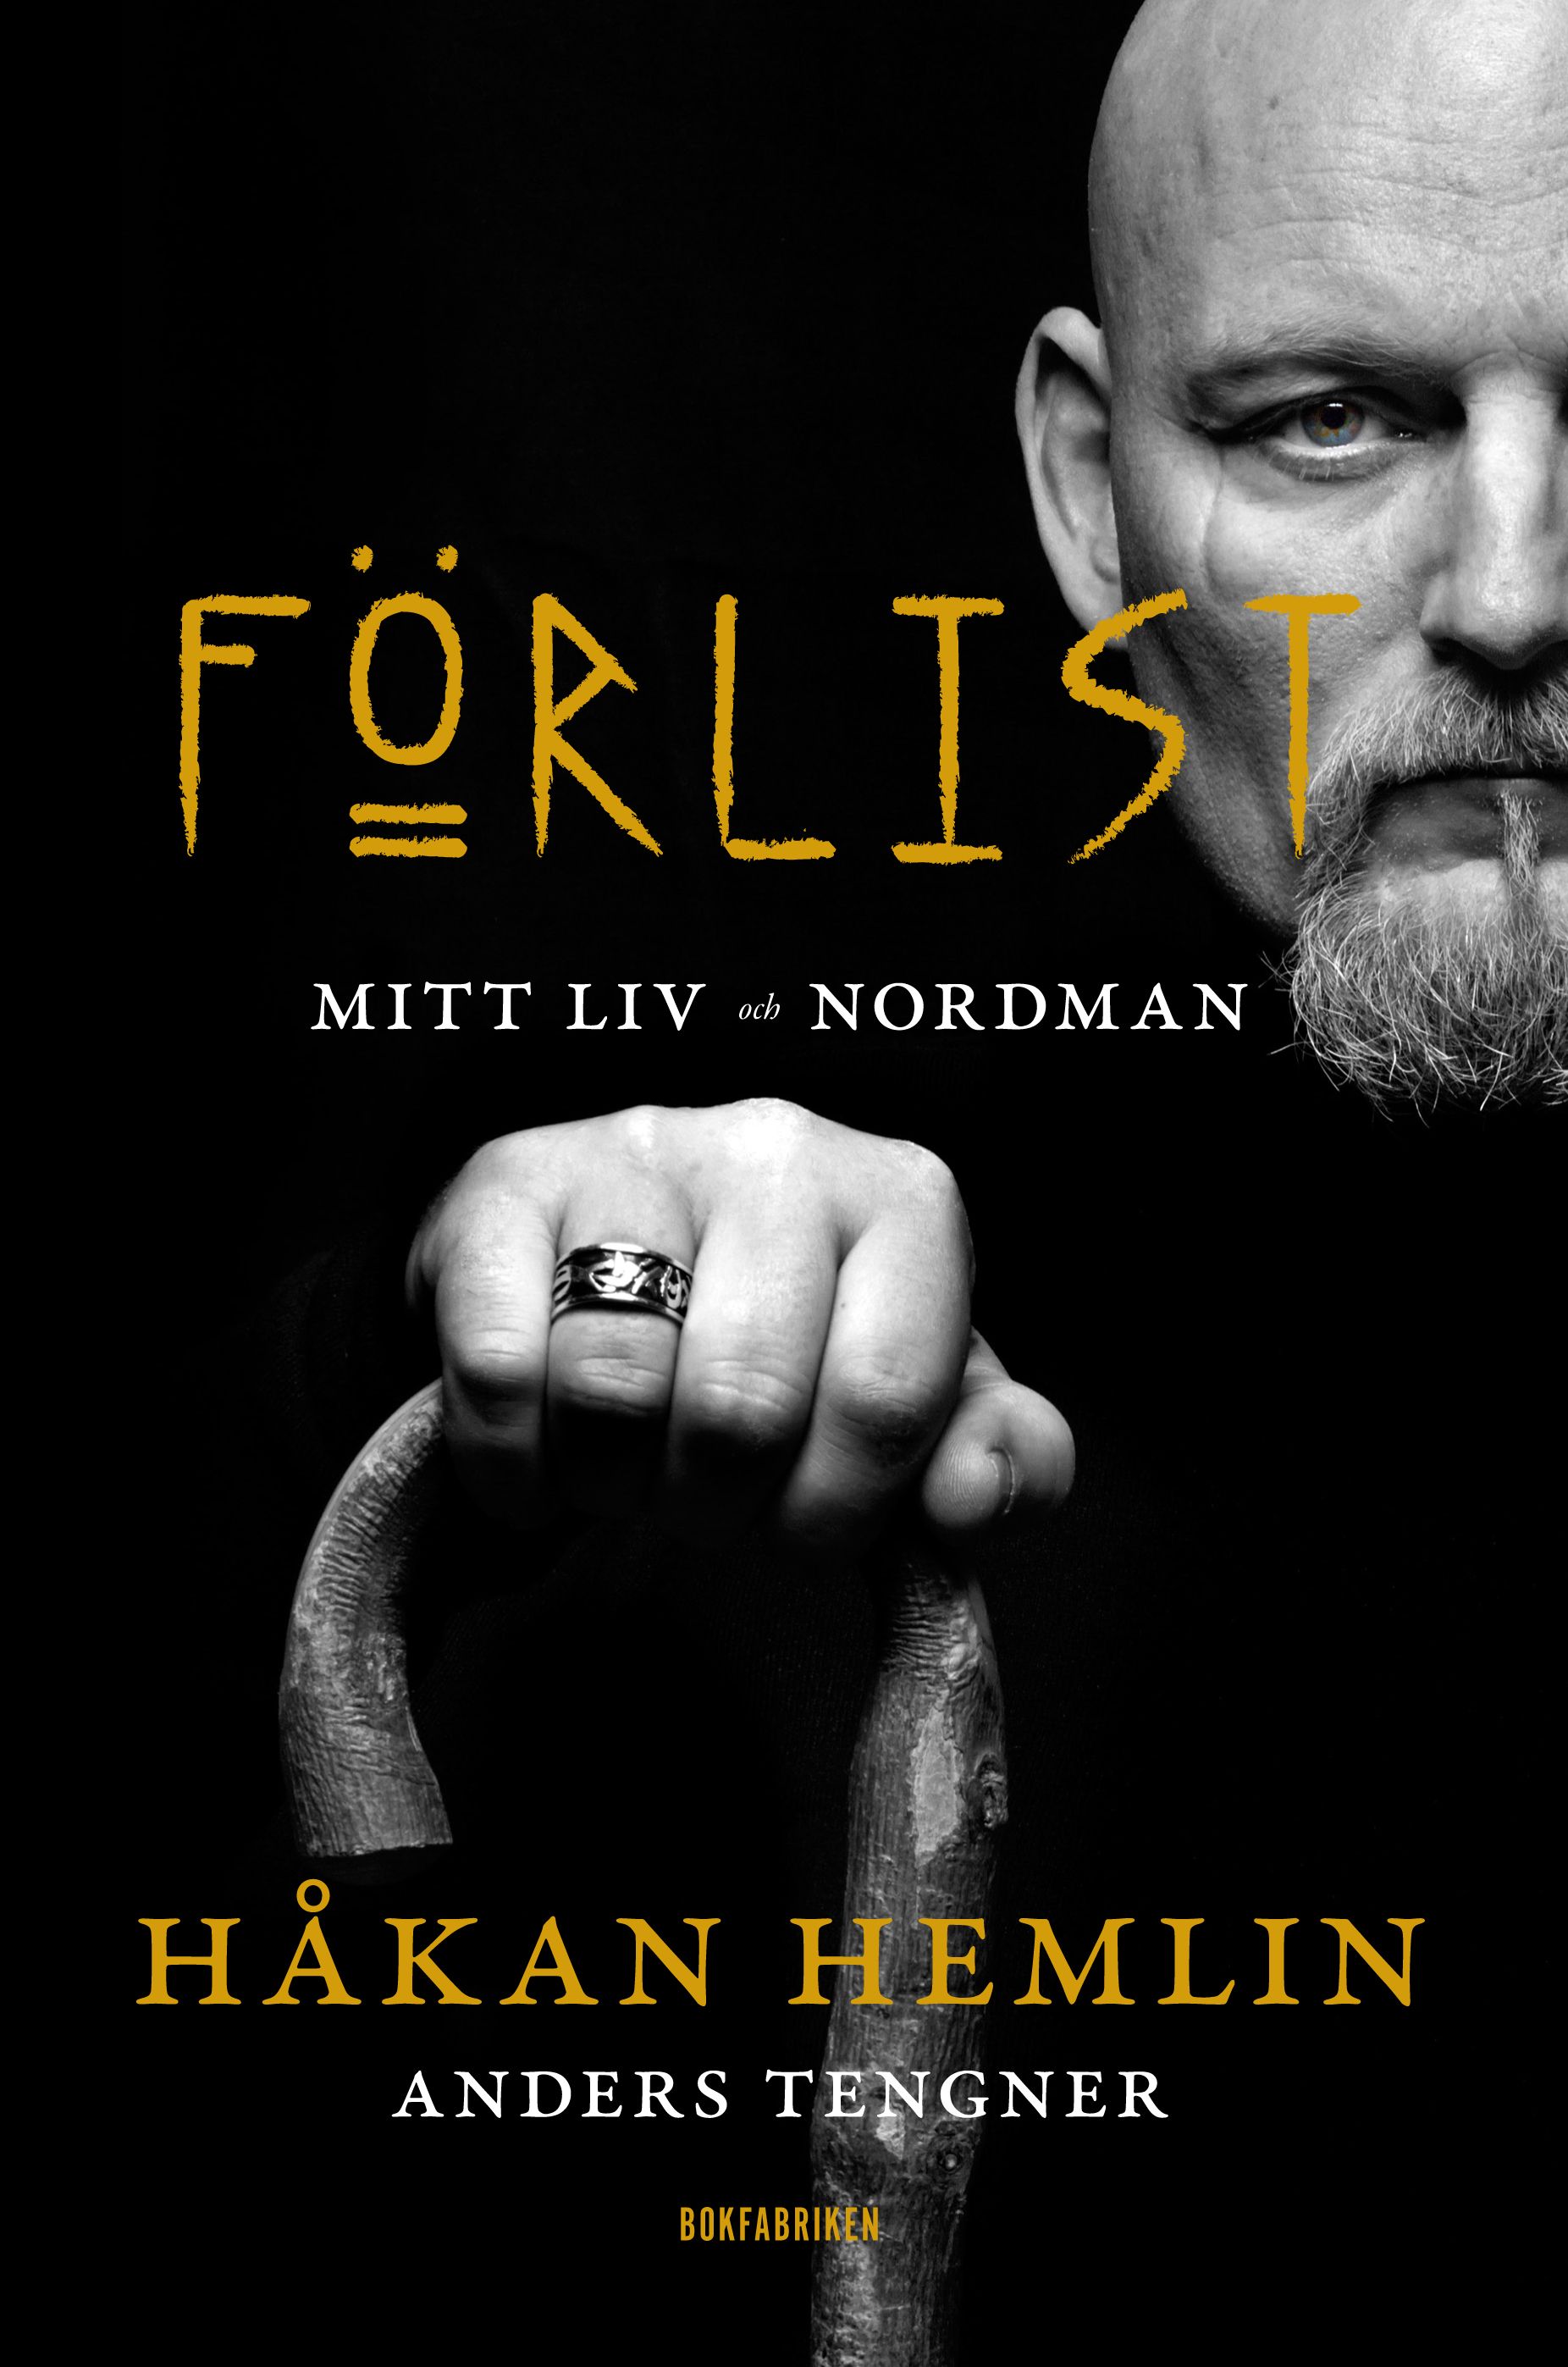 Förlist : Mitt liv och Nordman, eBook by Håkan Hemlin, Anders Tengner